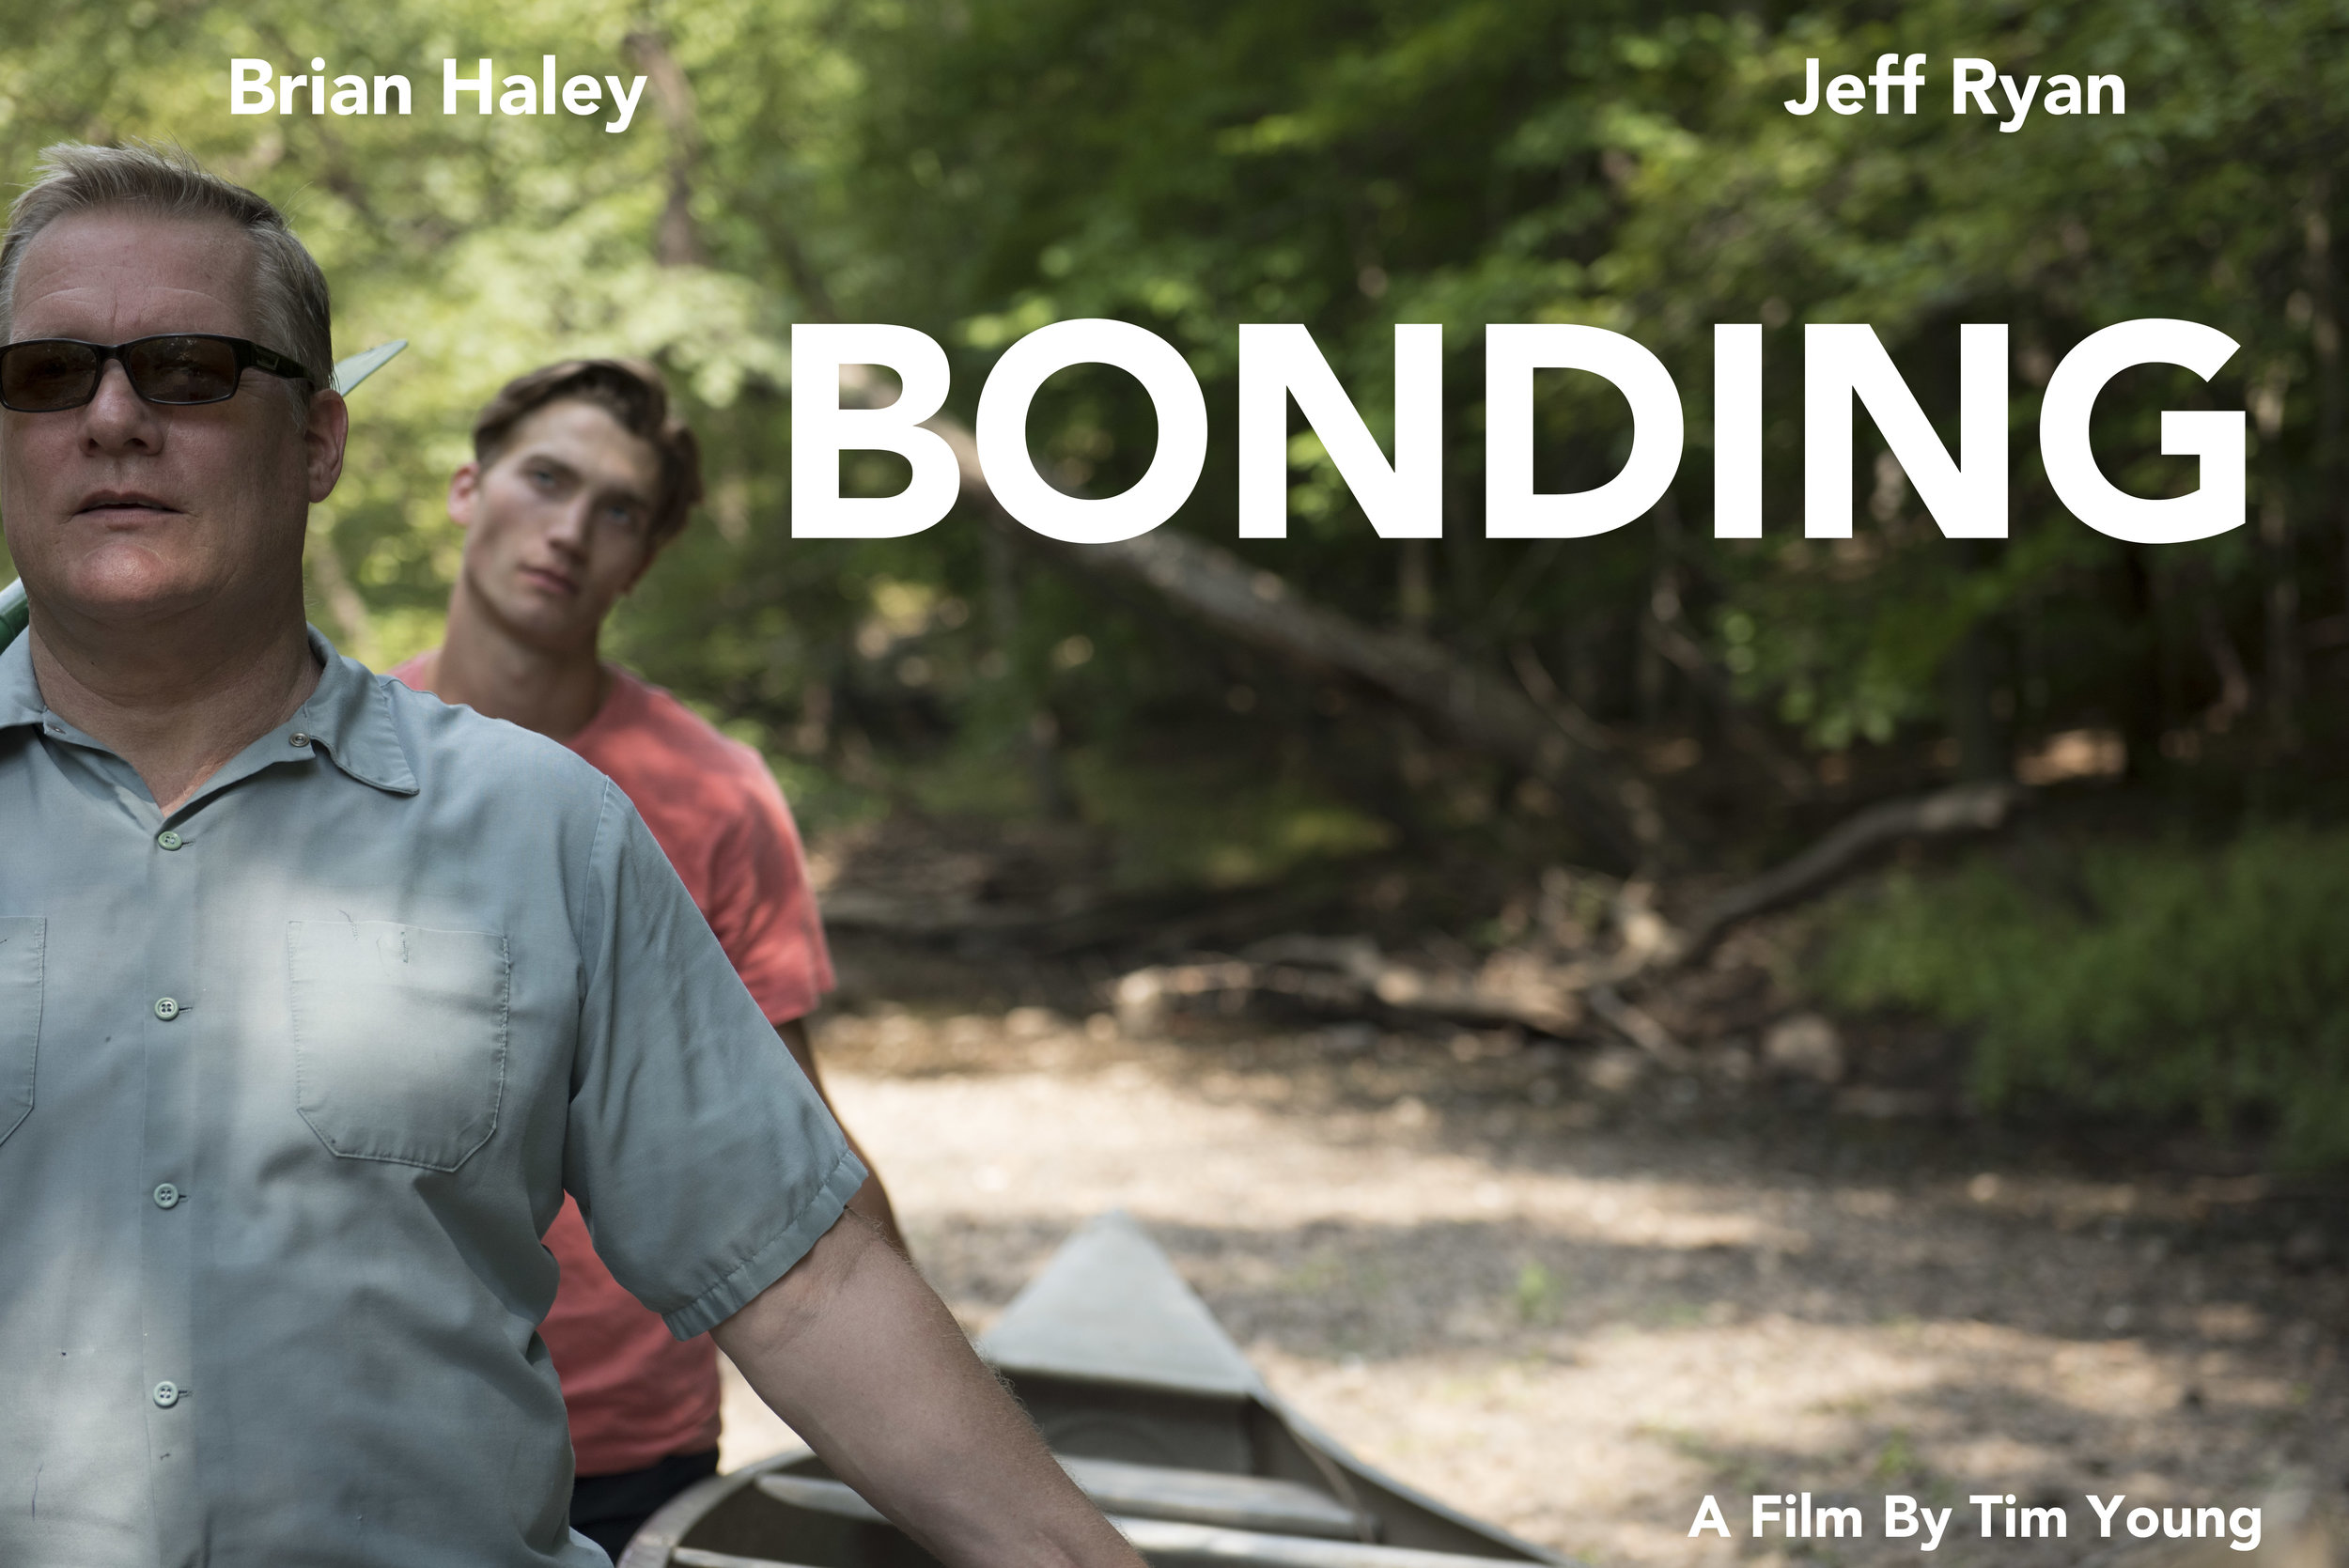  Alternate poster for  Bonding.  